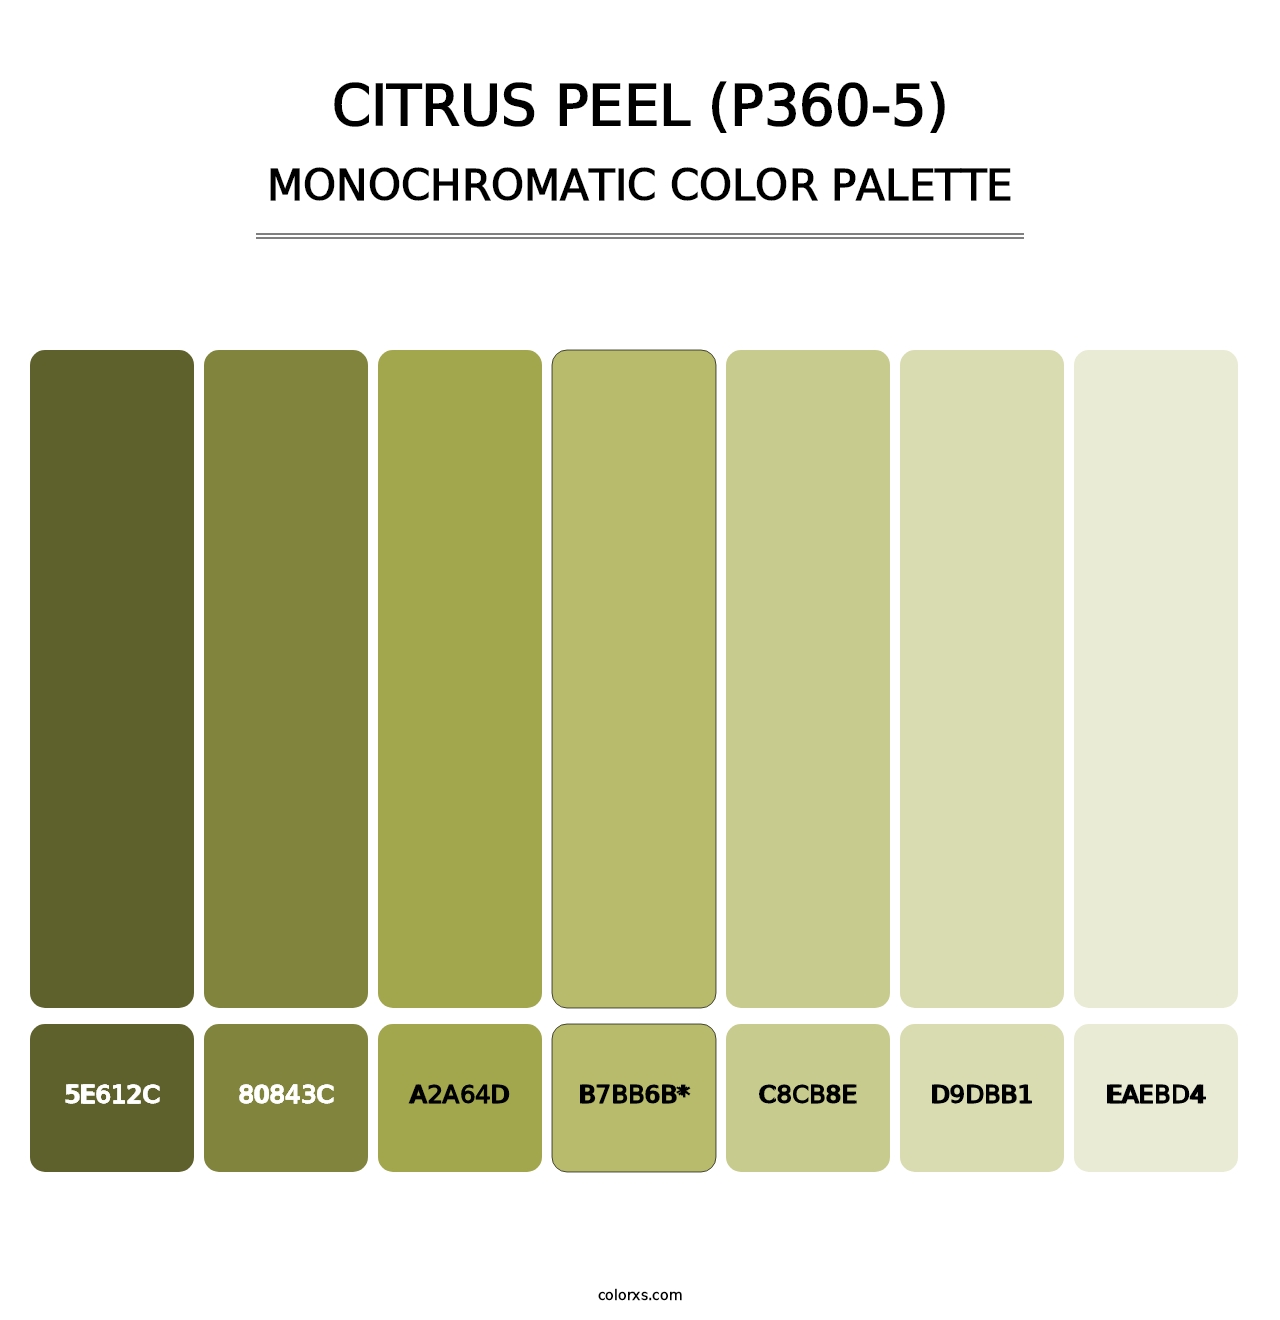 Citrus Peel (P360-5) - Monochromatic Color Palette